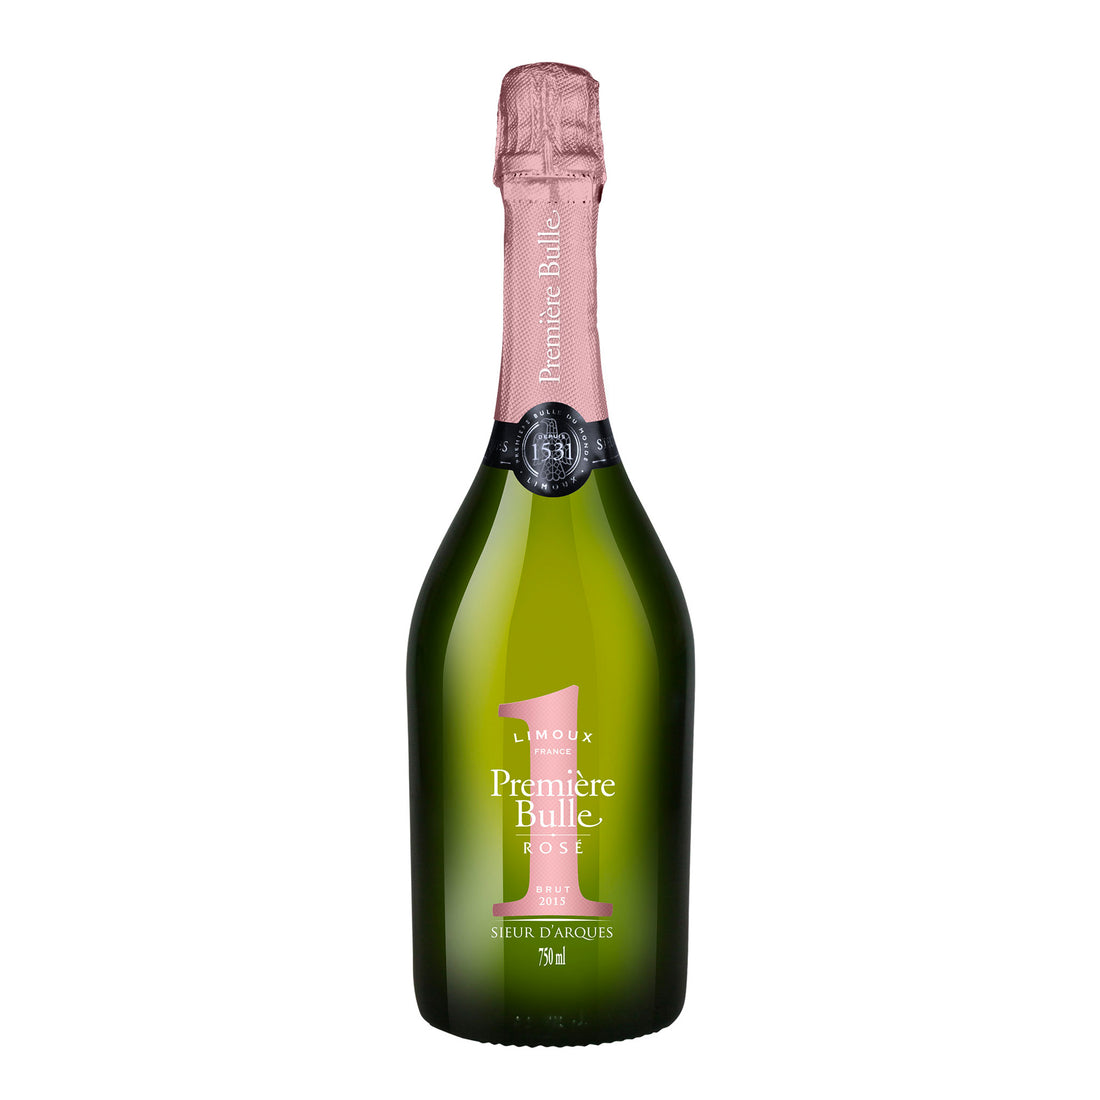 Premiere Bulle de Limoux Crémant rosé